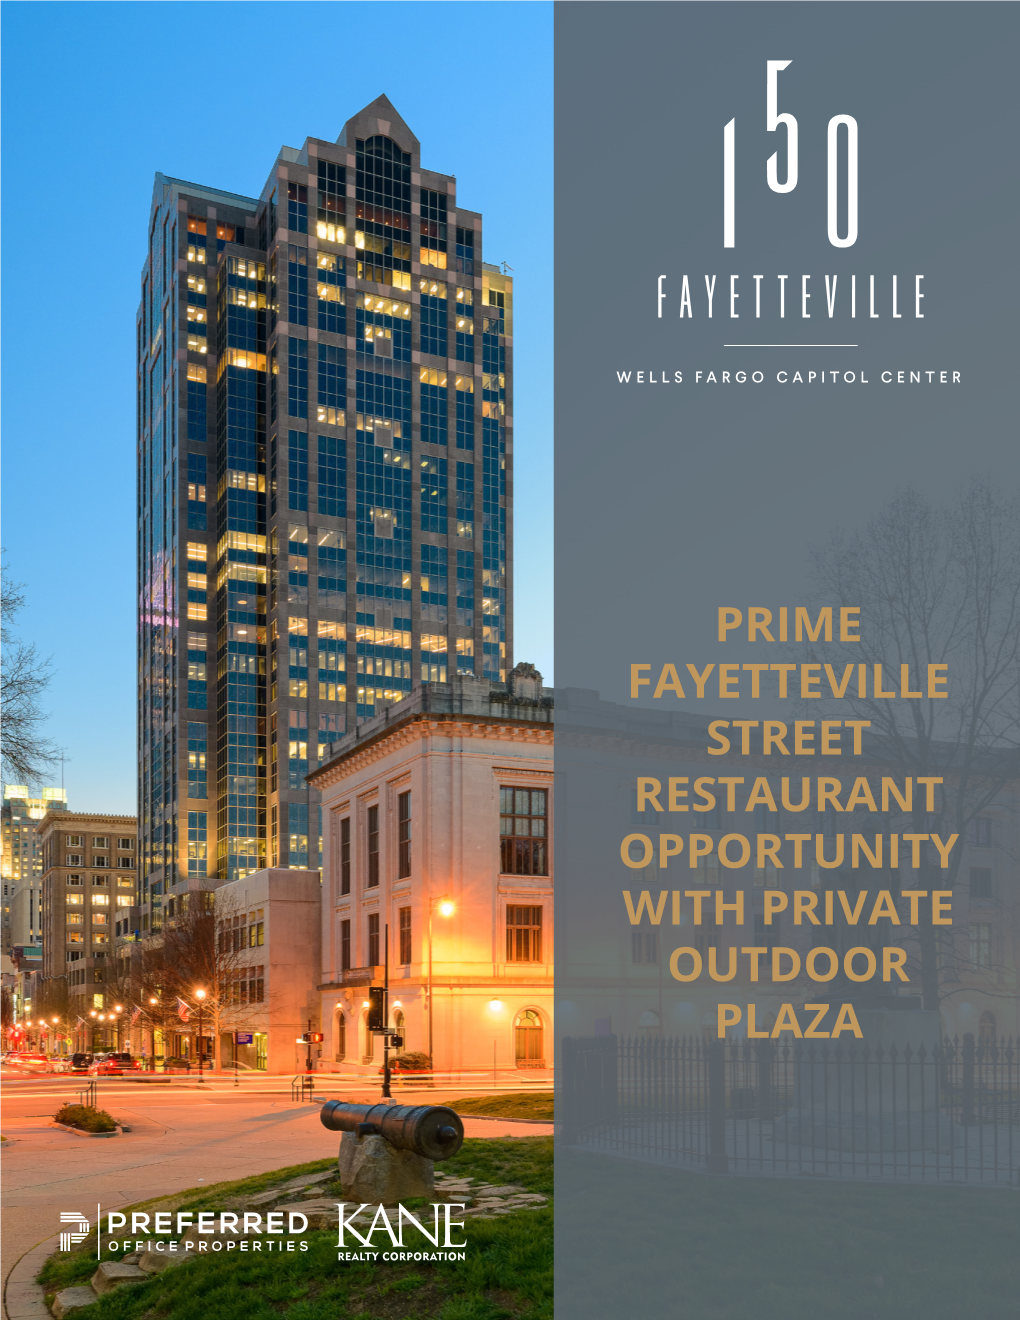 Prime Fayetteville Street Restaurant Opportunity